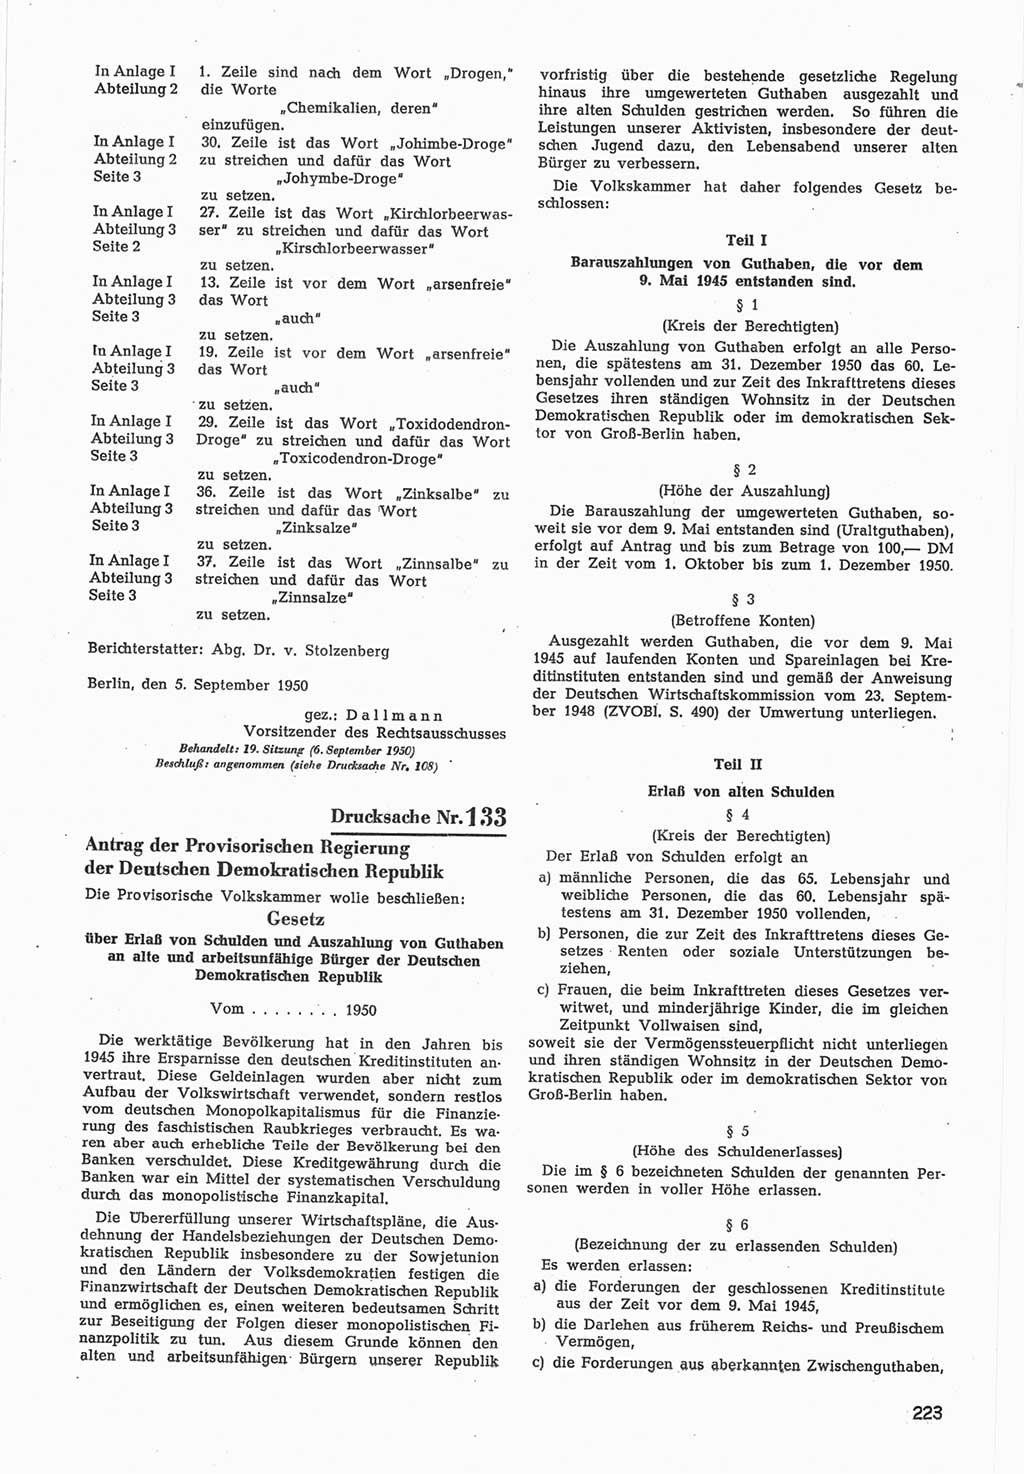 Provisorische Volkskammer (VK) der Deutschen Demokratischen Republik (DDR) 1949-1950, Dokument 825 (Prov. VK DDR 1949-1950, Dok. 825)